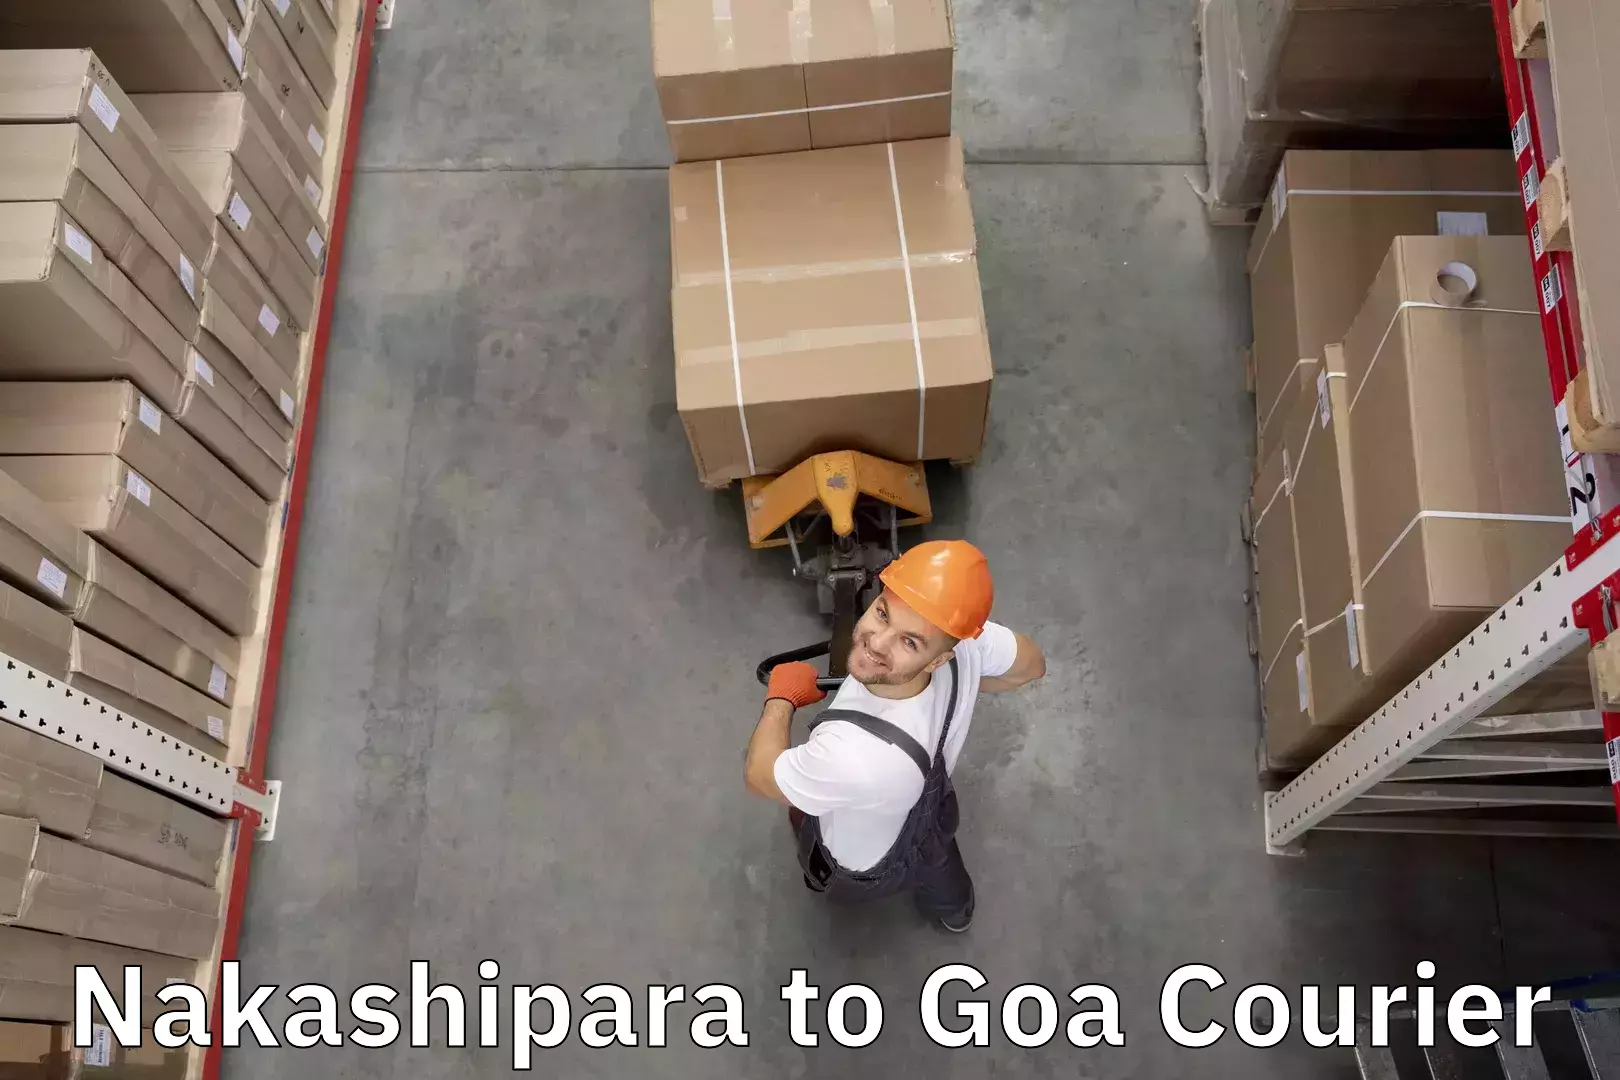 Baggage shipping calculator Nakashipara to Ponda